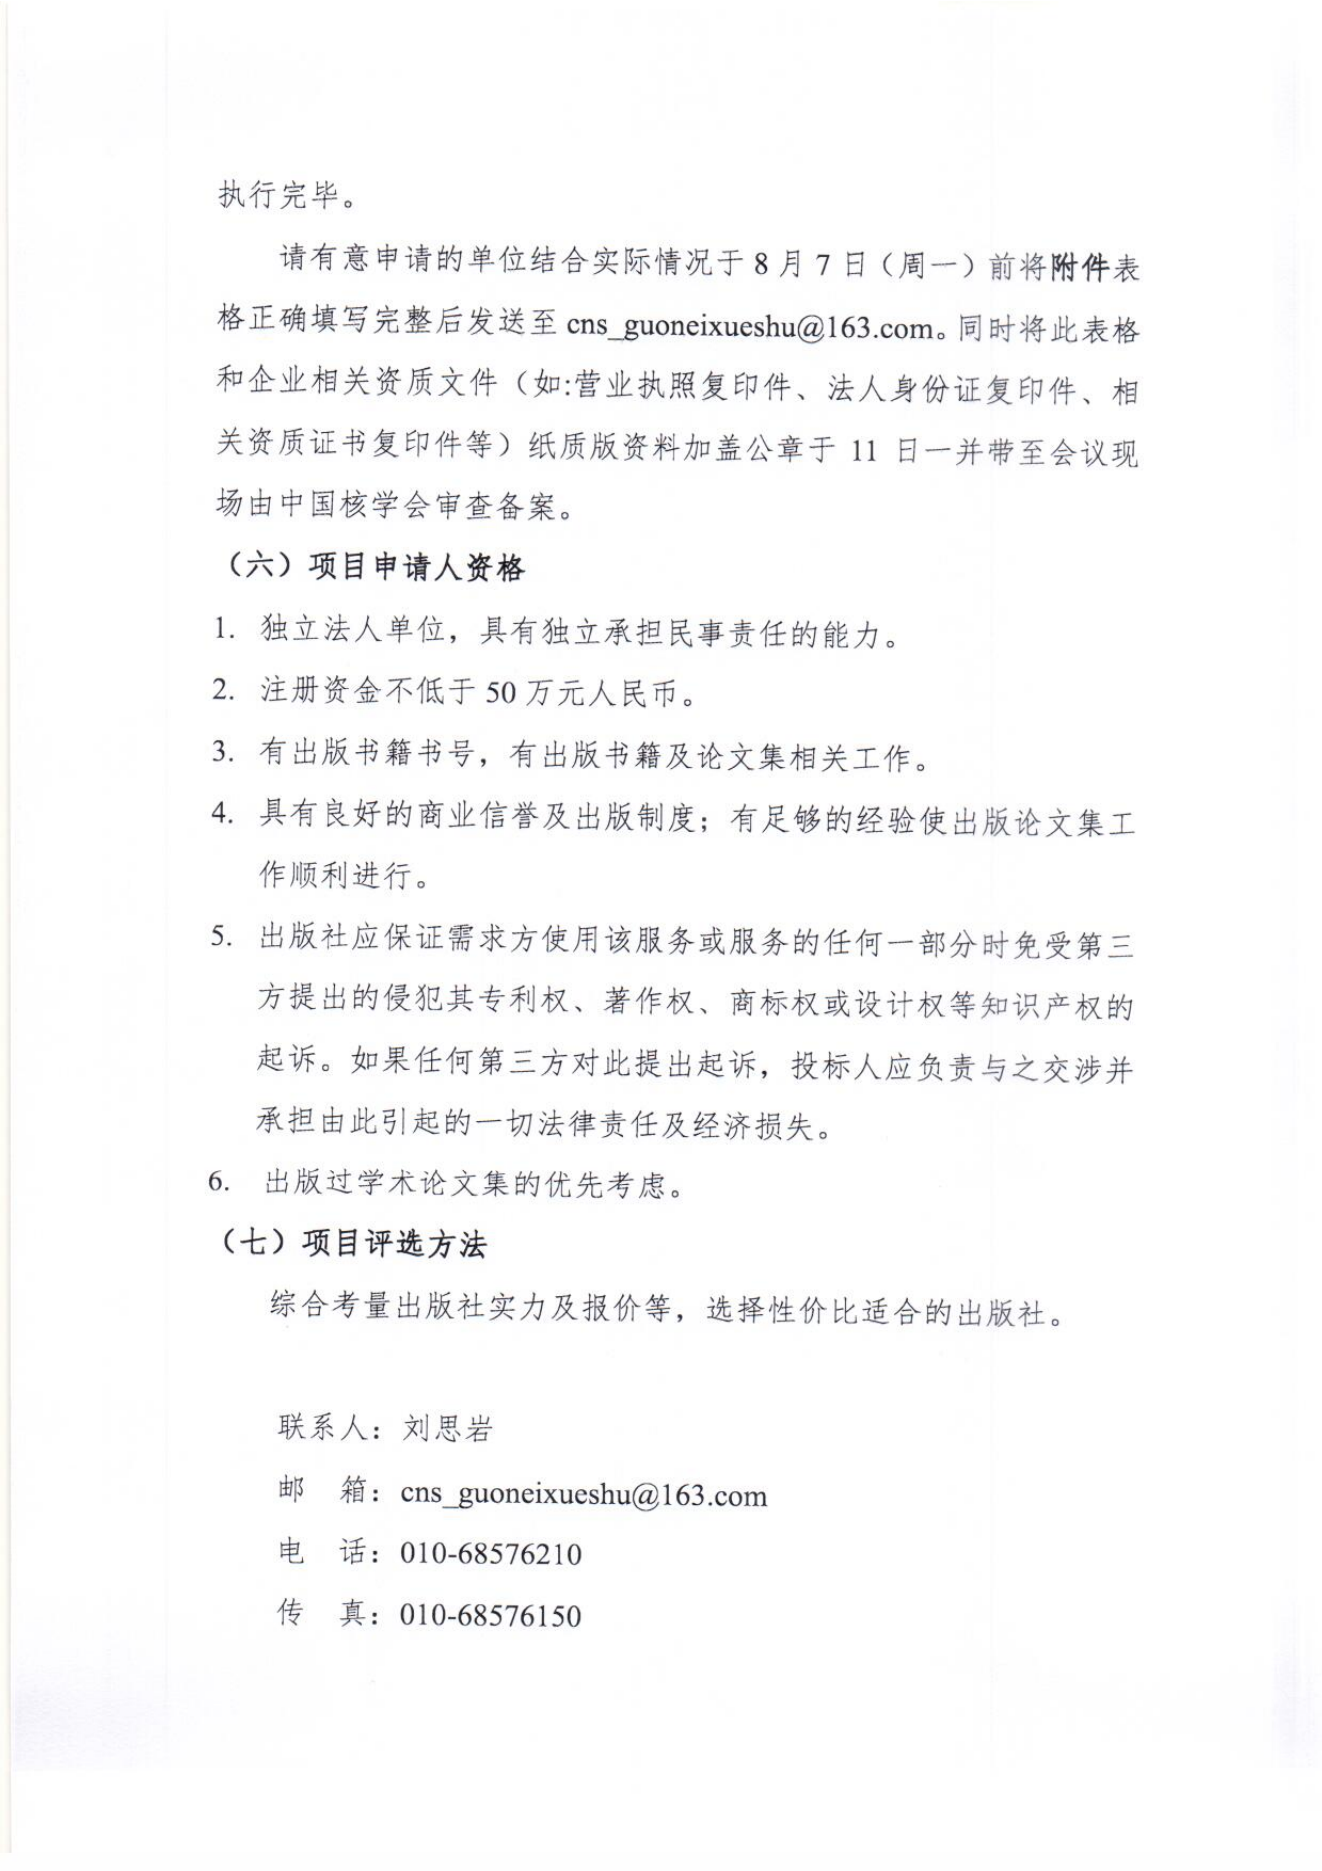 中国核学会2023年学术年会论文集竞争性谈判邀请函_01.png